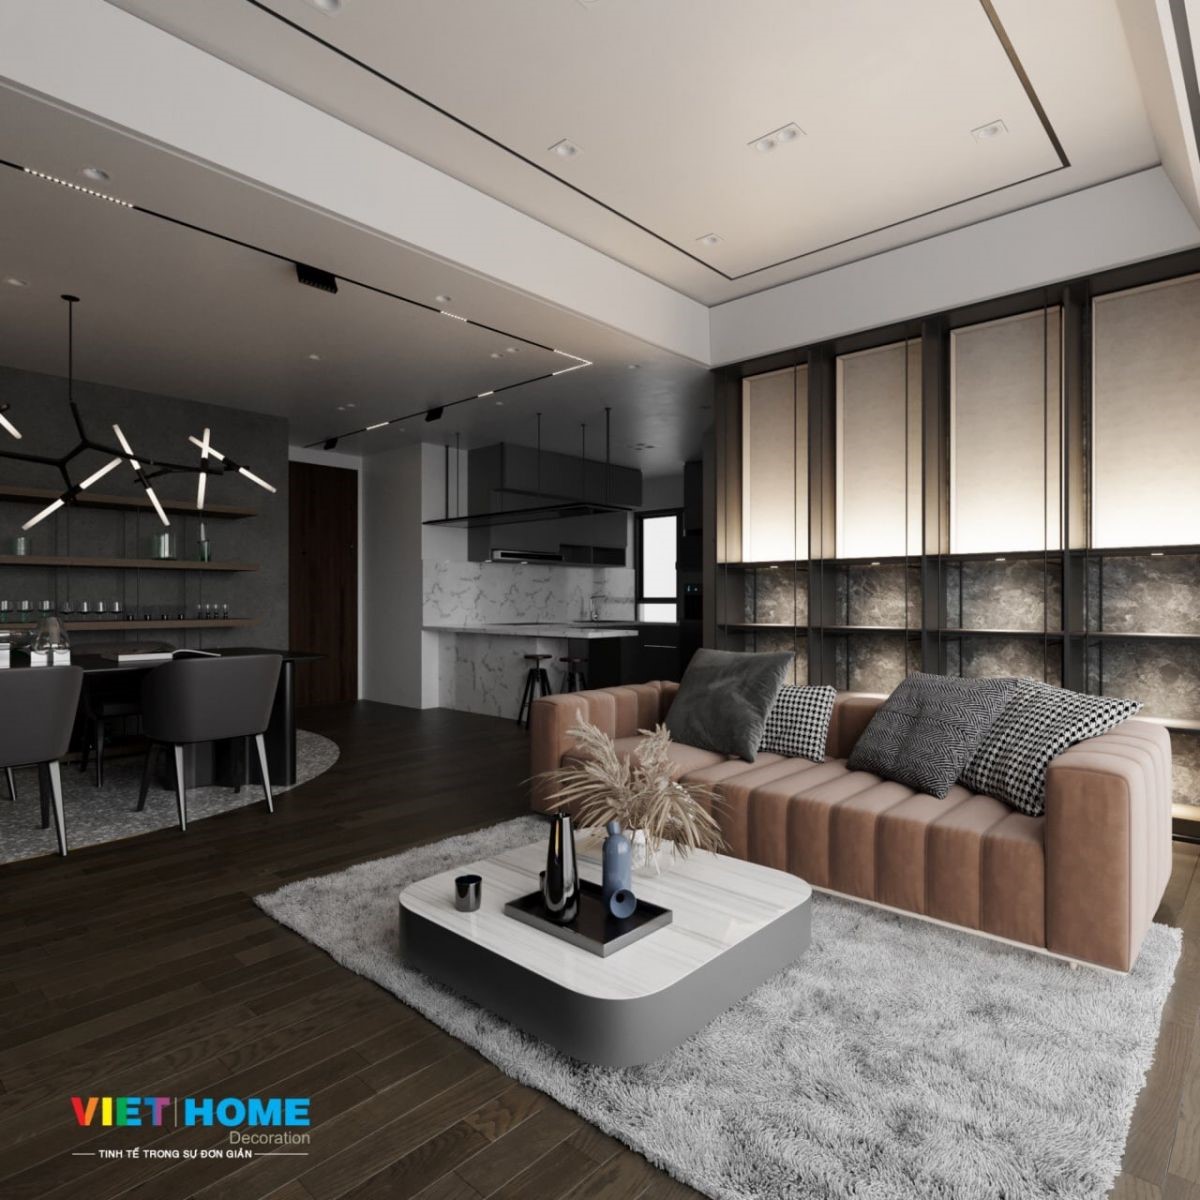 Thiết kế nội thất theo phong cách hiện đại -modern style view 5